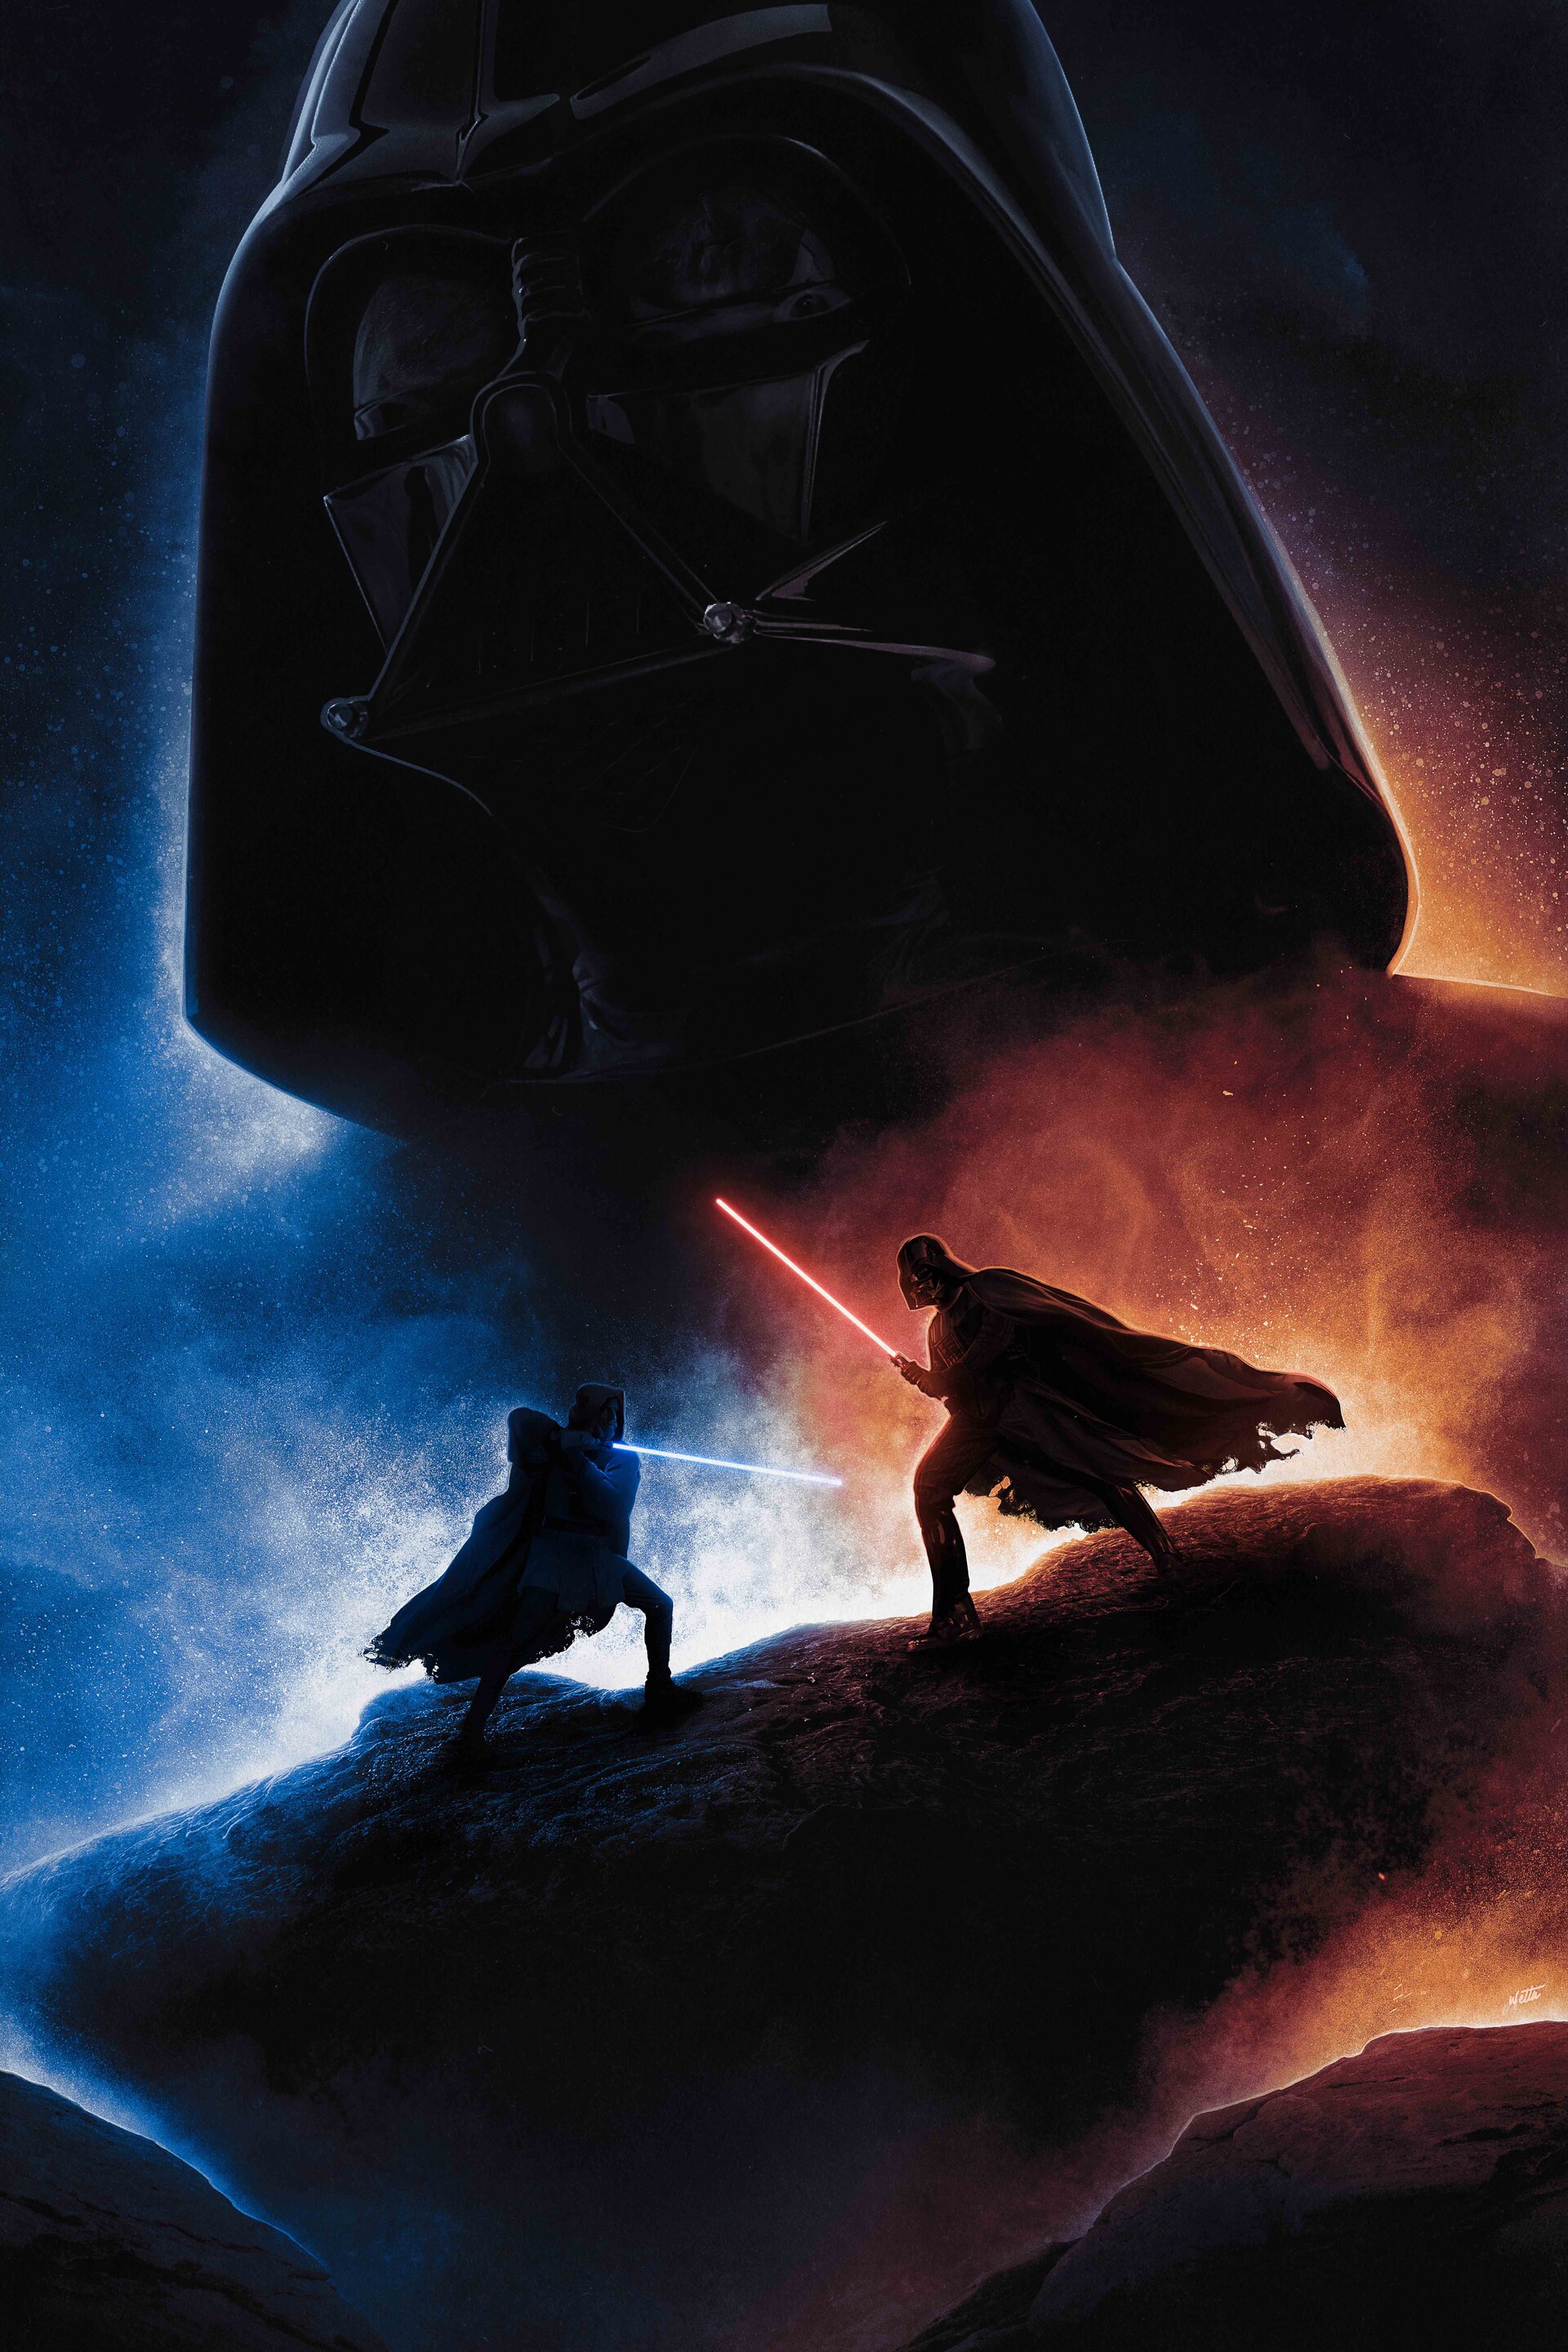 Darth Vader Obi Wan Kenobi Star Wars Wallpaper  Resolution1920x1080   ID1196108  wallhacom